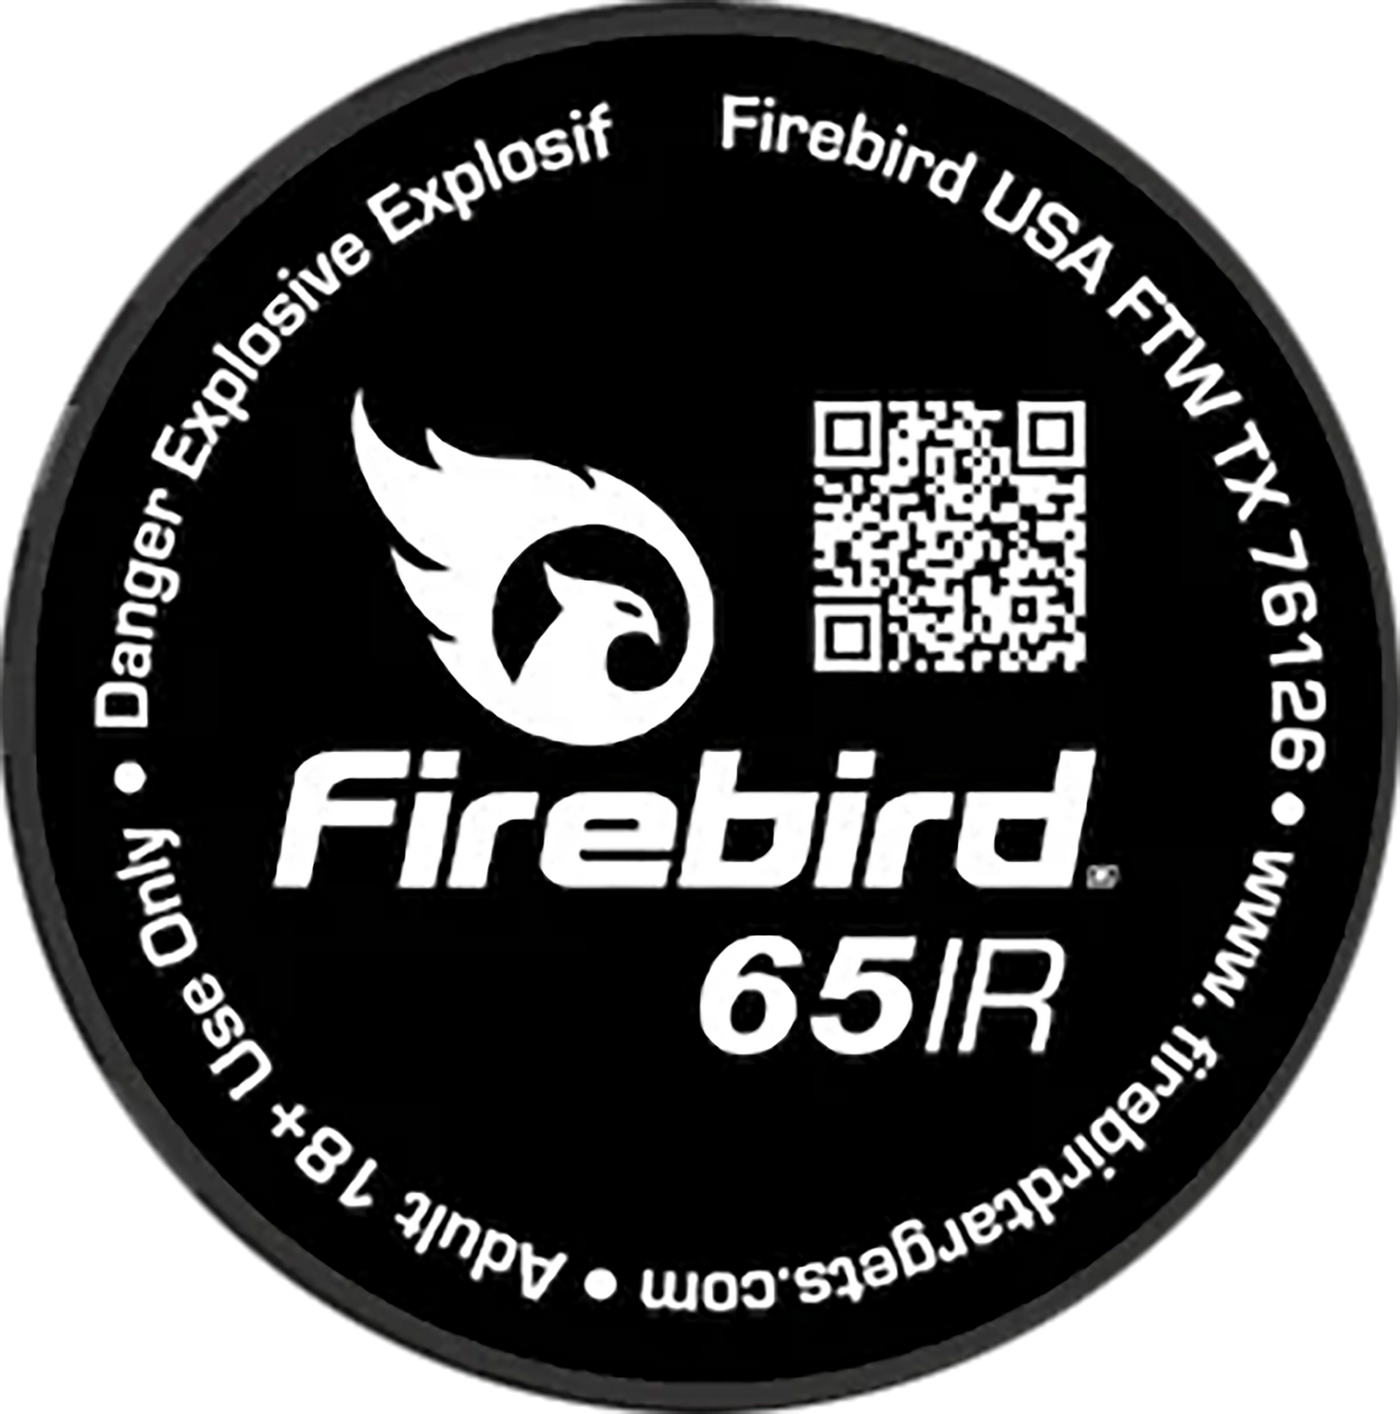 Firebird Usa 65ir, Firebird 65ir   Firebird 65 Ir Targets          10